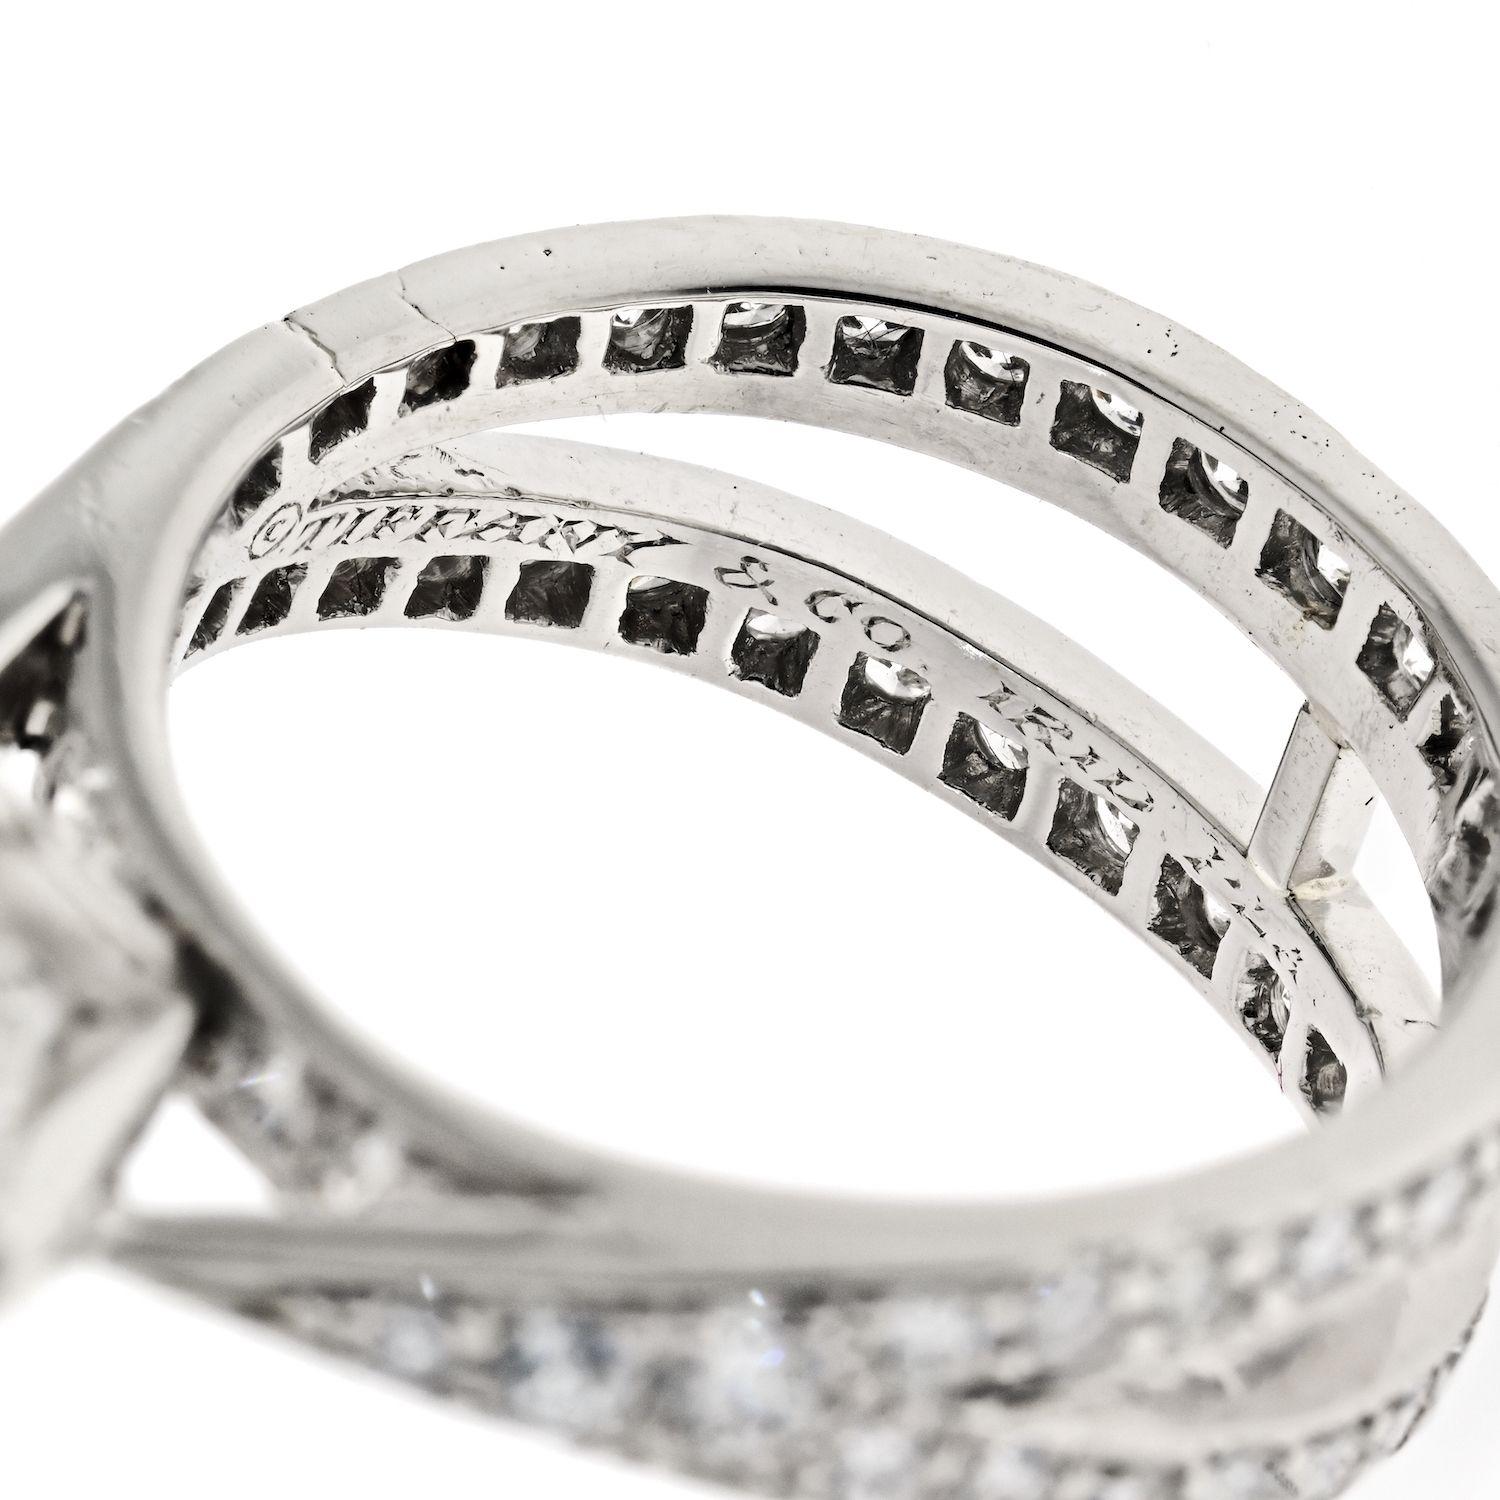 Ein fantastischer diamantener Verlobungsring, der nicht der durchschnittliche sechszackige Tiffany-Ring ist. Dies ist ein Nachlass Diamant Verlobungsring von Tiffany & Co. montiert in Platin mit 1,79ct runden Brillantschliff in der Mitte.
Center